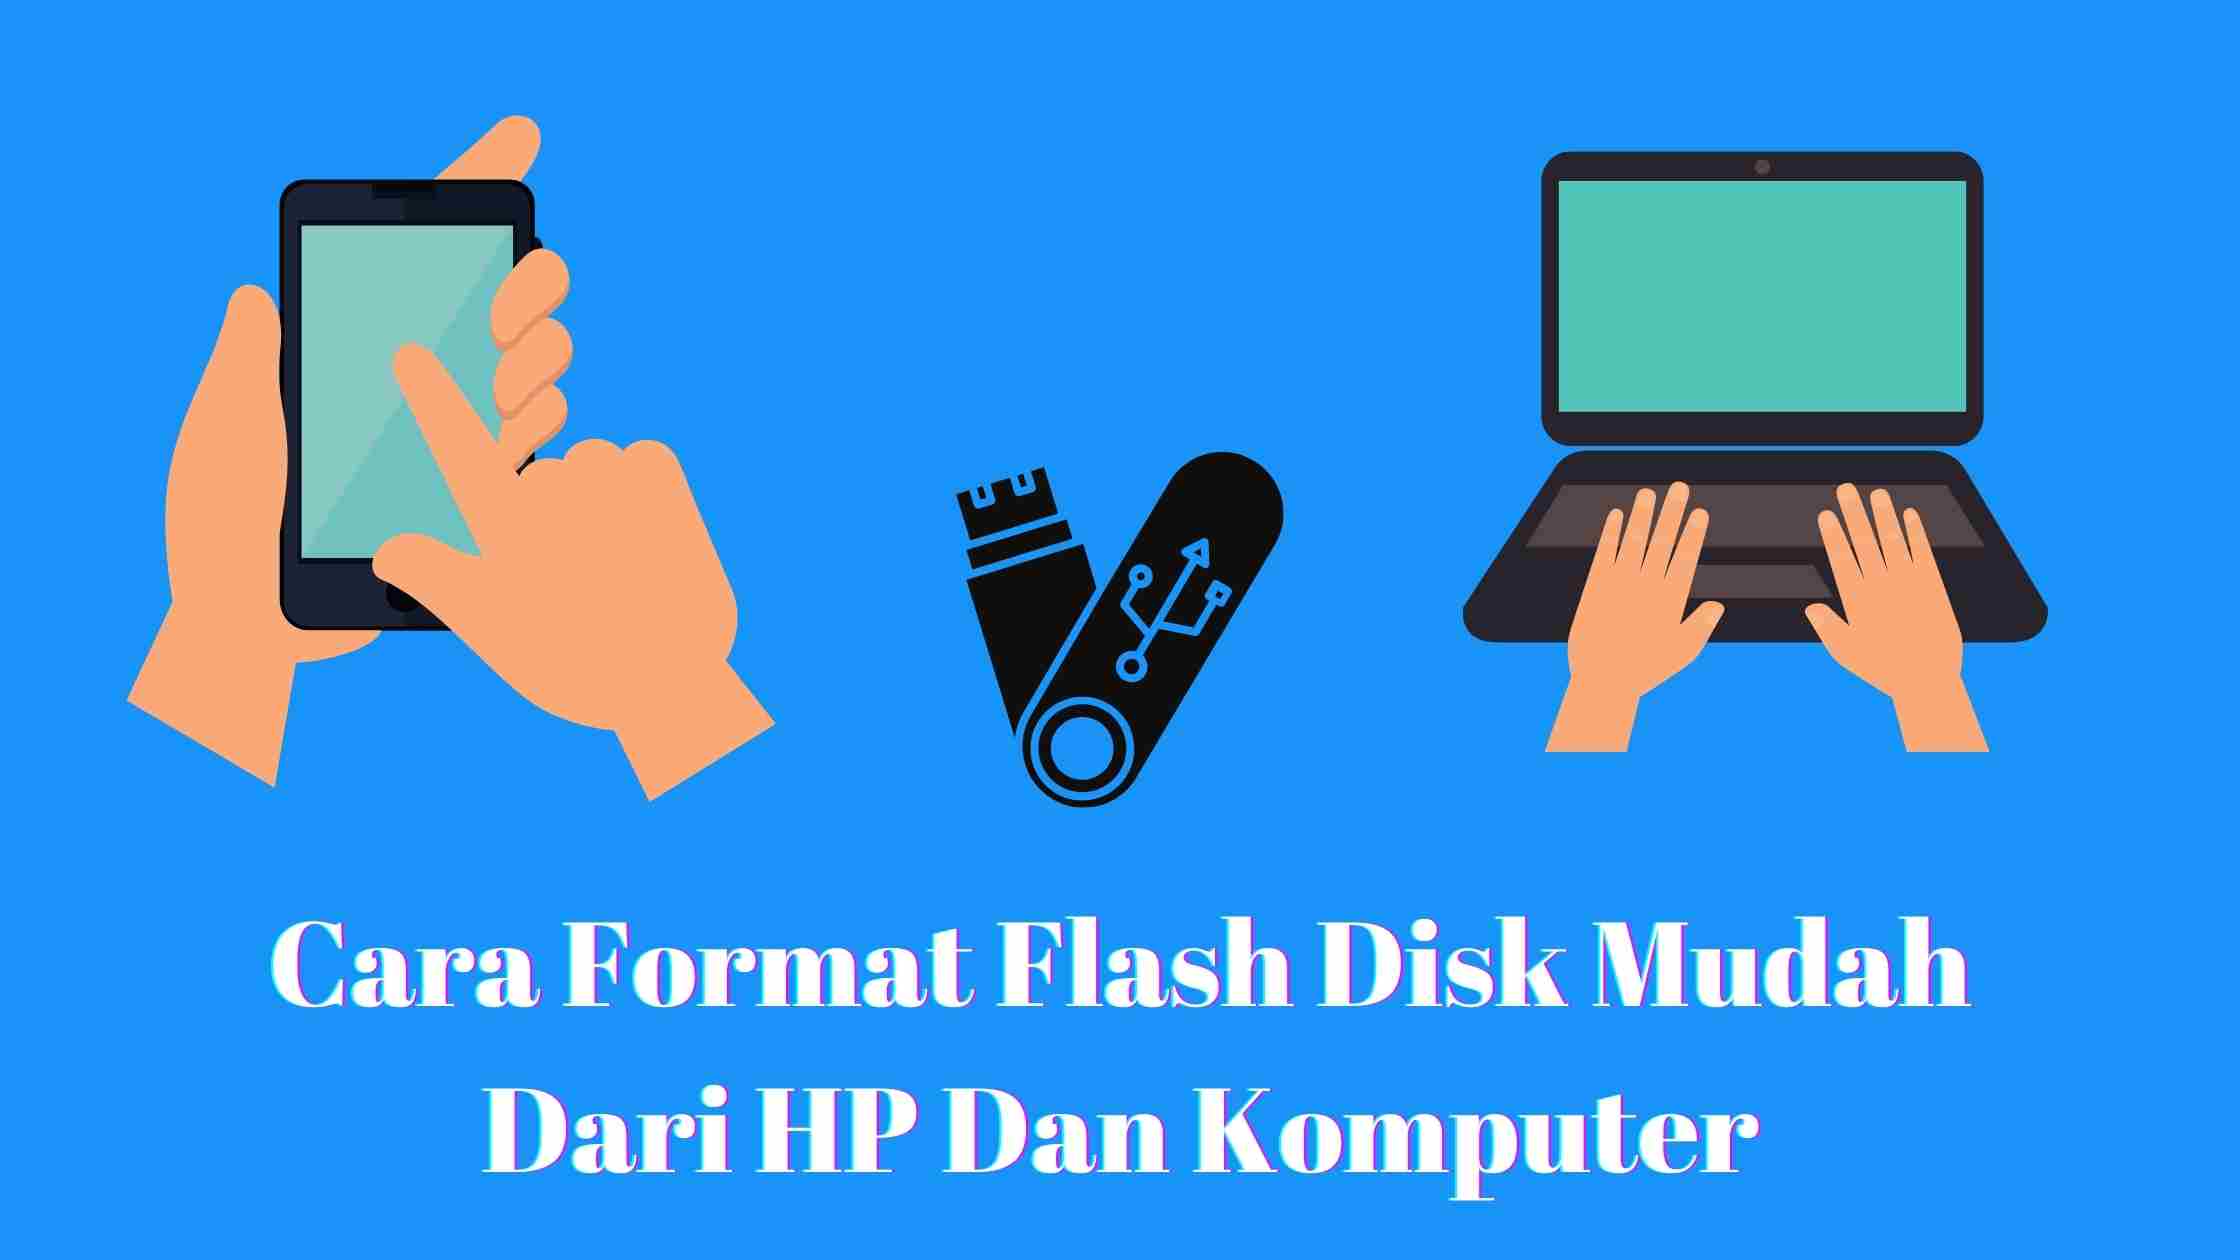 Cara Format Flash Disk Mudah Di Laptop Dan Smartphone - Mencari Inspirasi